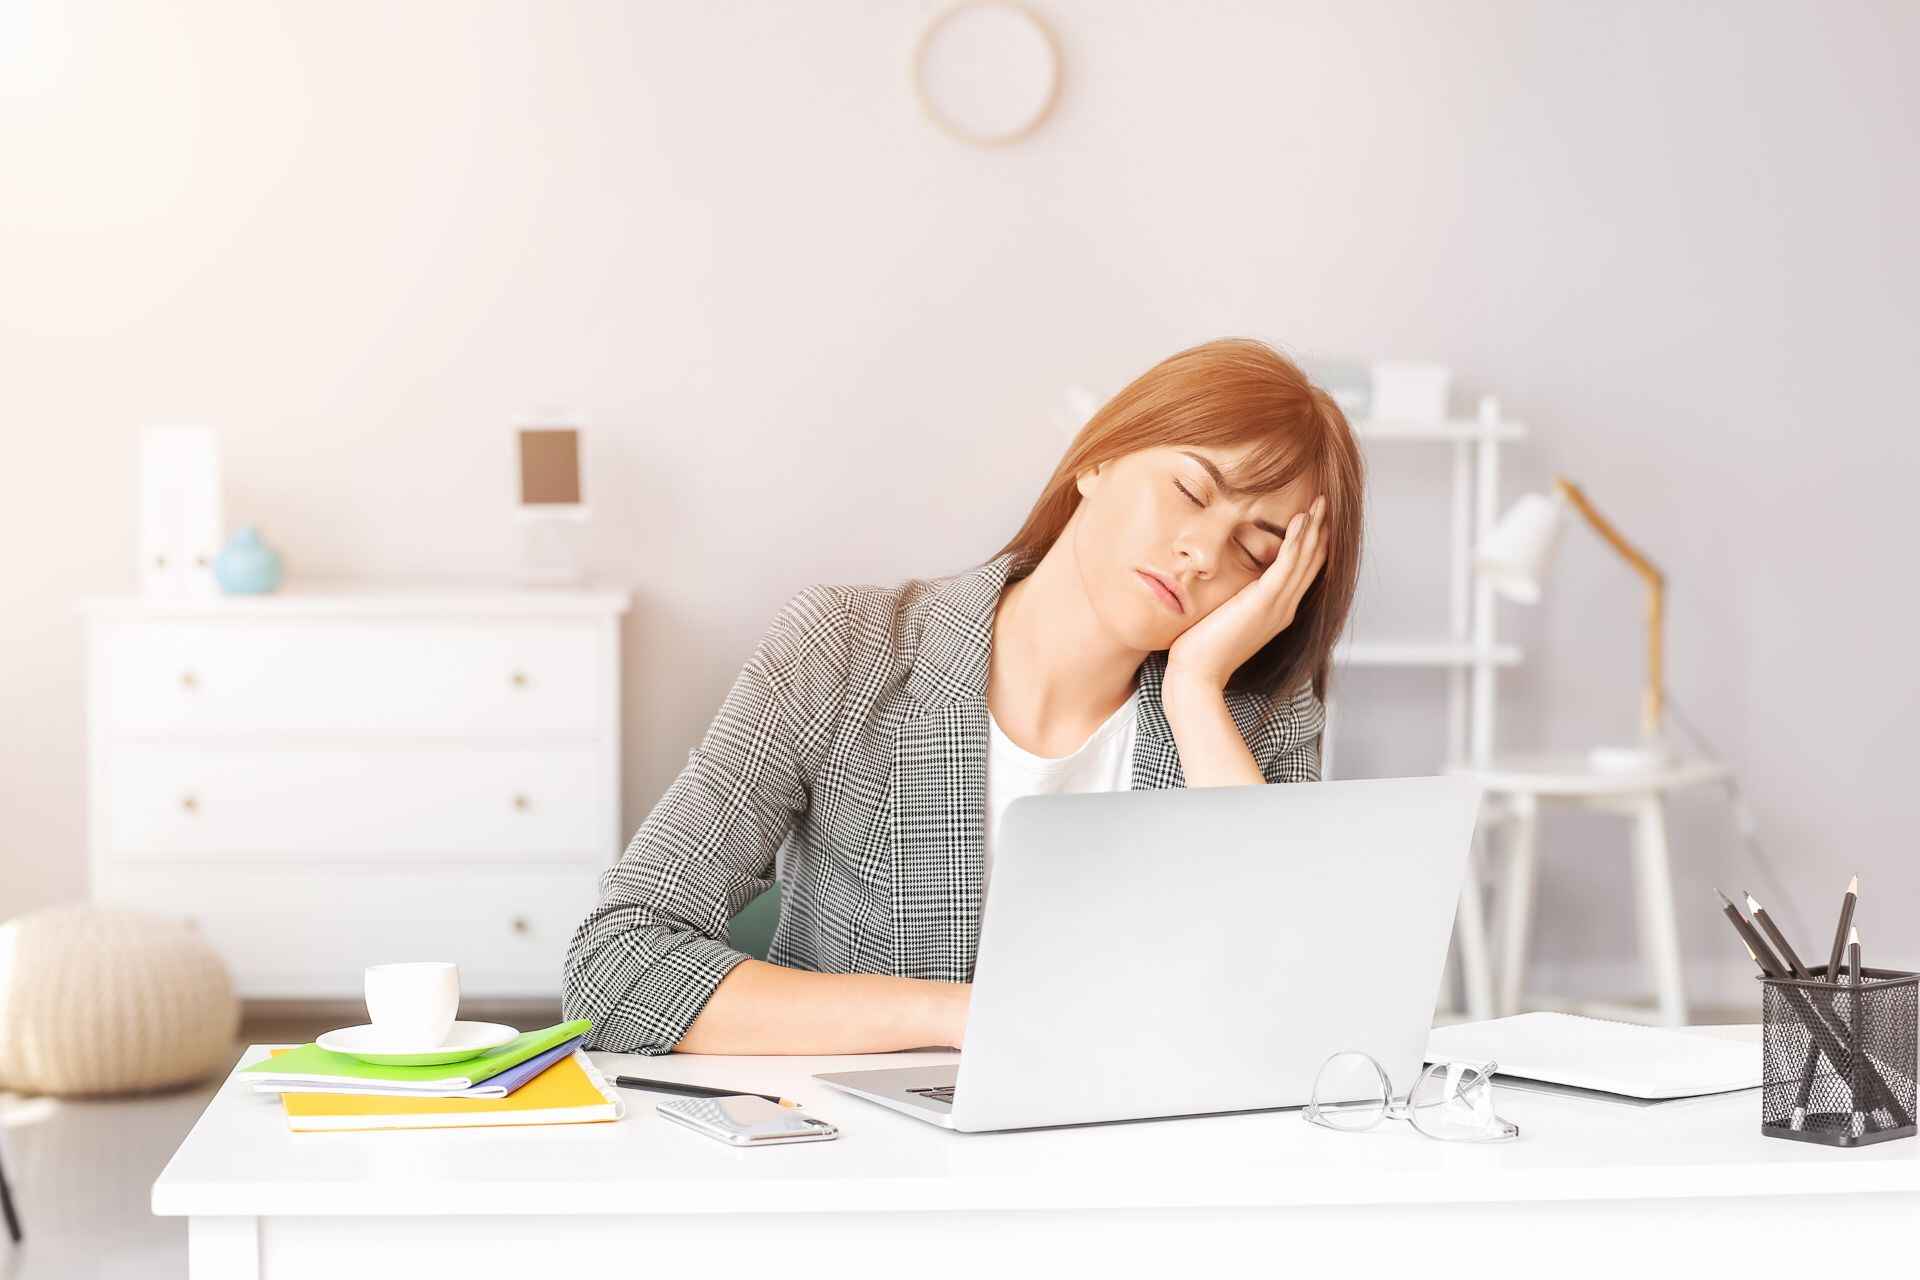 Сидячая работа: существует существенная разница между физической и умственной усталостью